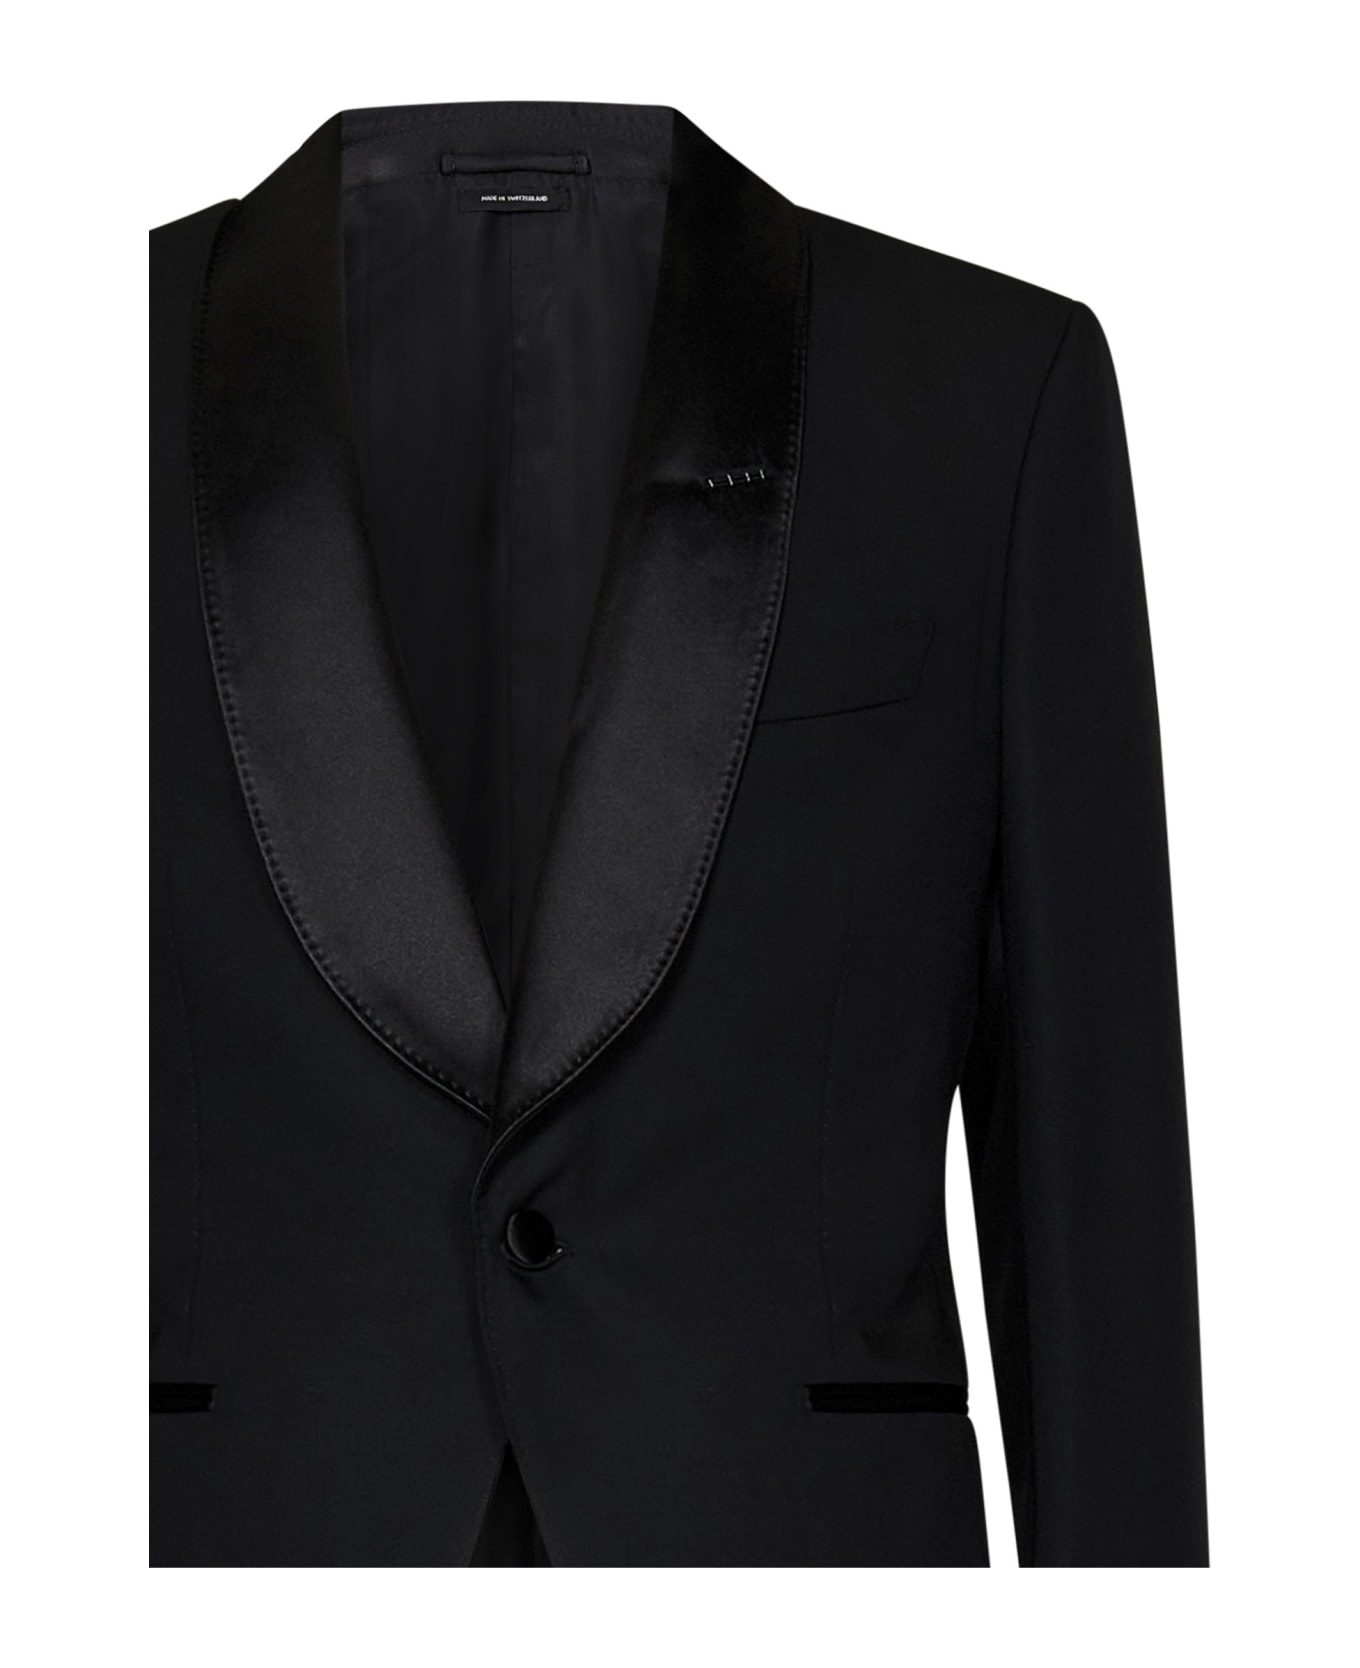 Tom Ford Atticus  Suit - Black